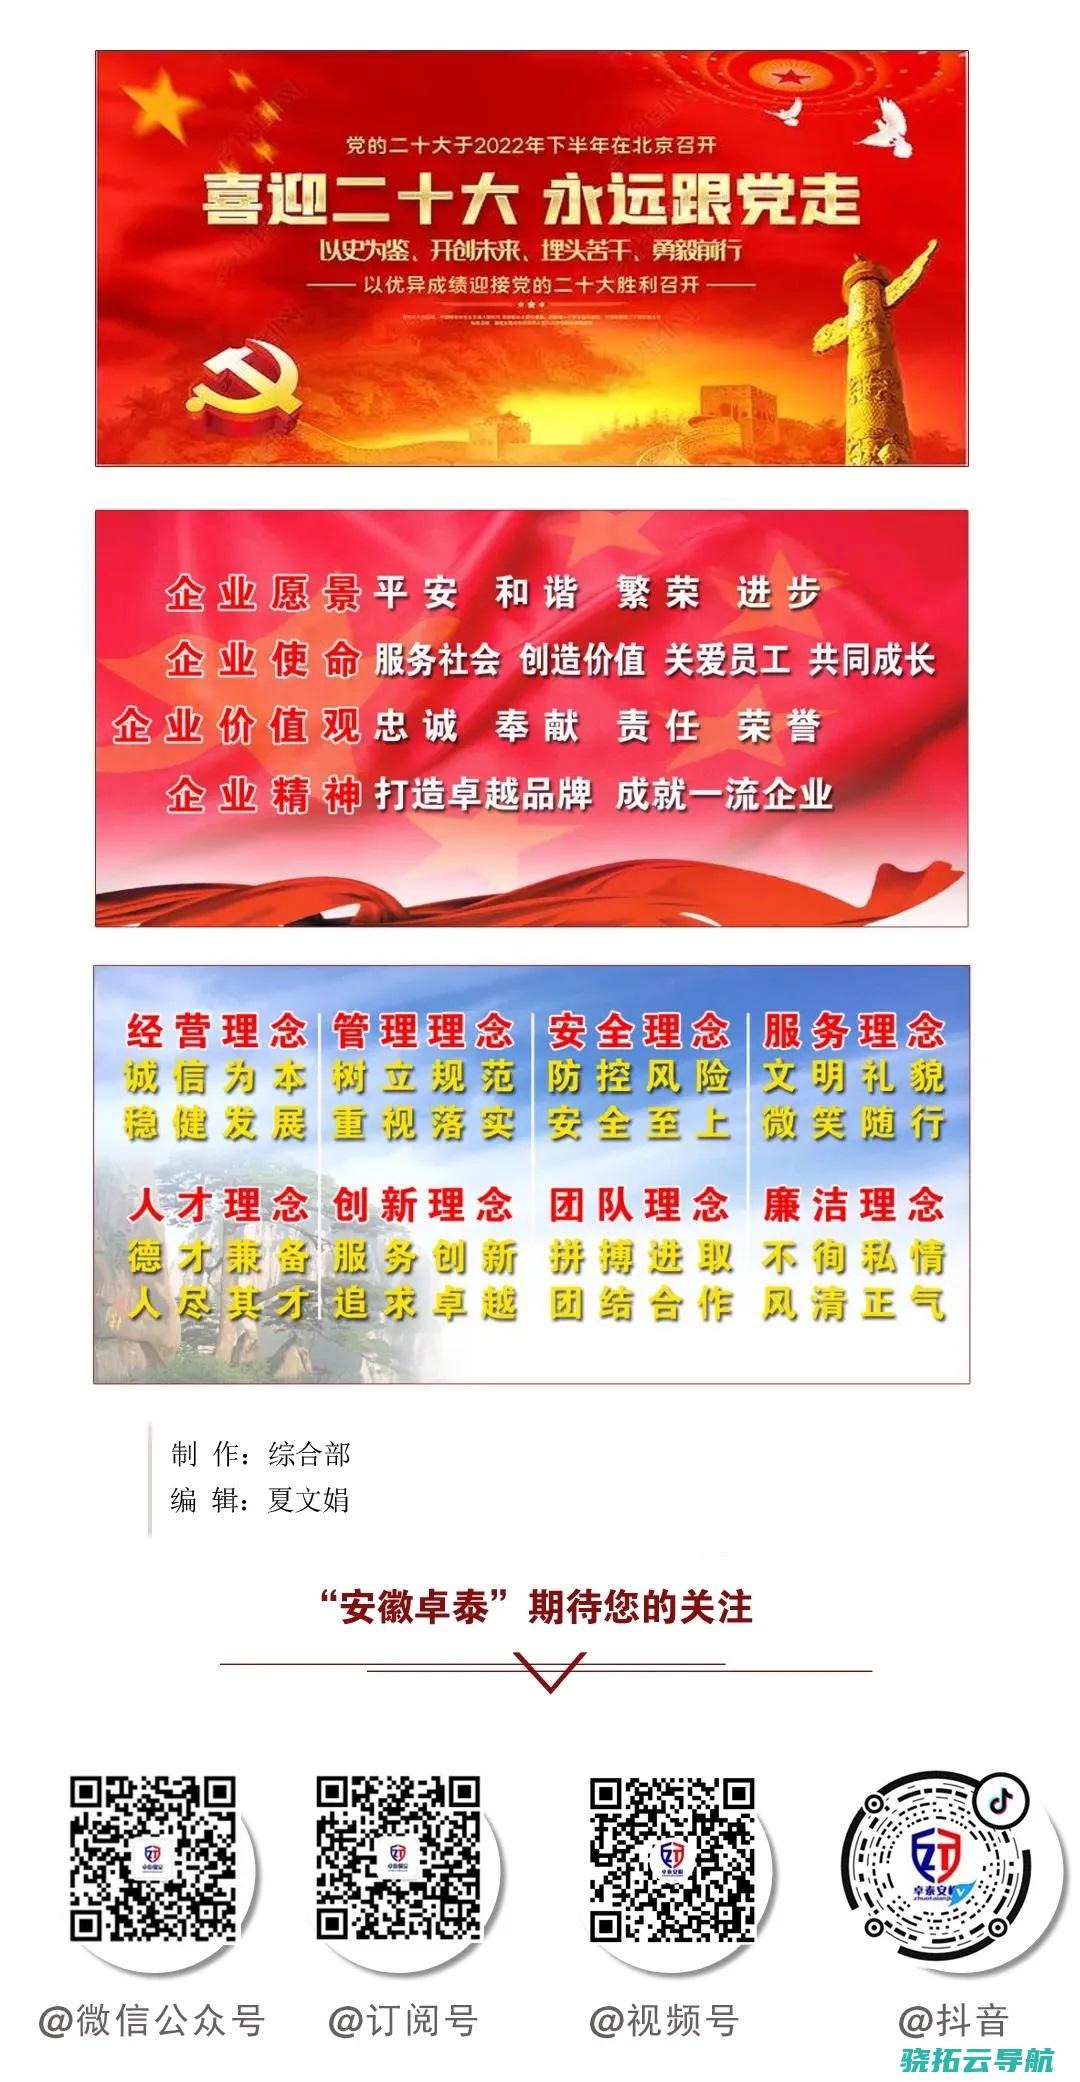 安徽芜湖保安涉嫌猥亵强奸10余名小学女生